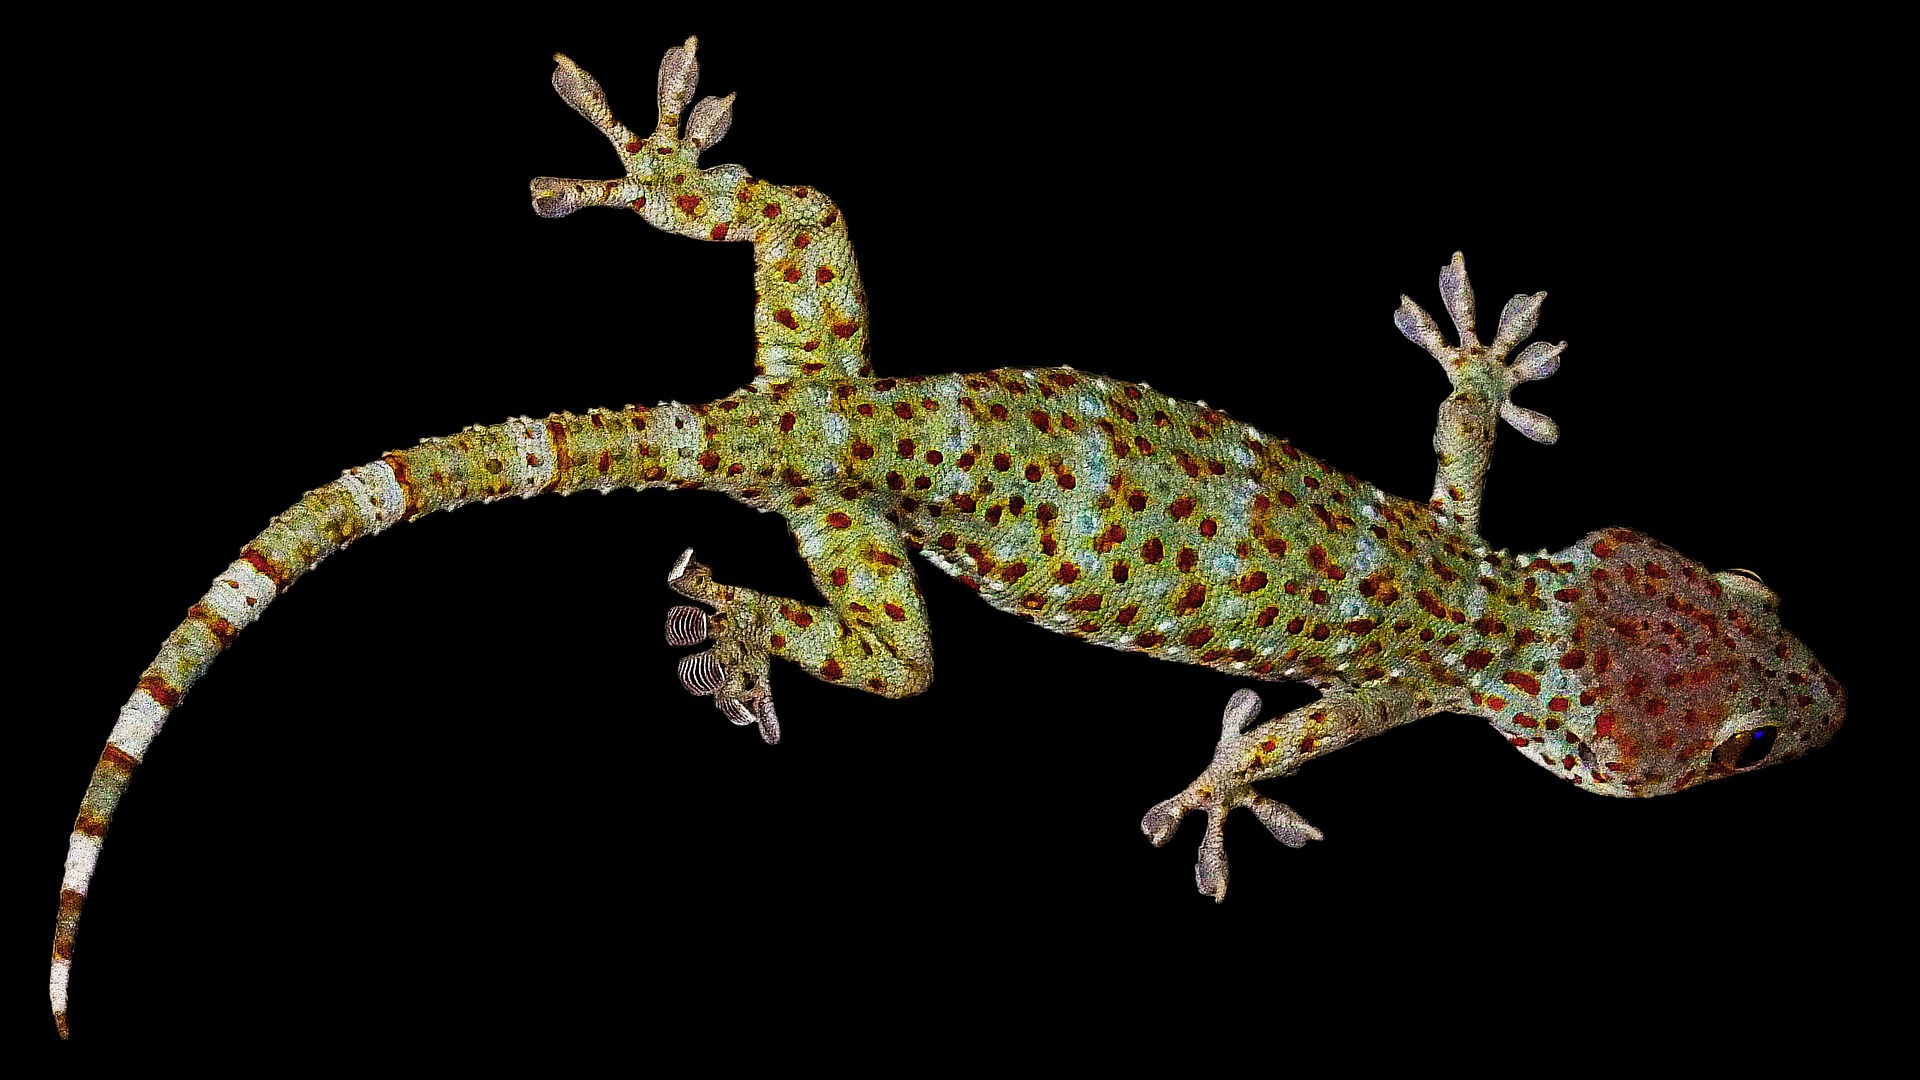 dlaczego gekon chodzi po szybie, jak gekon chodzi, wypustki na palcach gekona, gekony, animalistka.pl, animalistka, blog o zwierzętach, zoologiczny